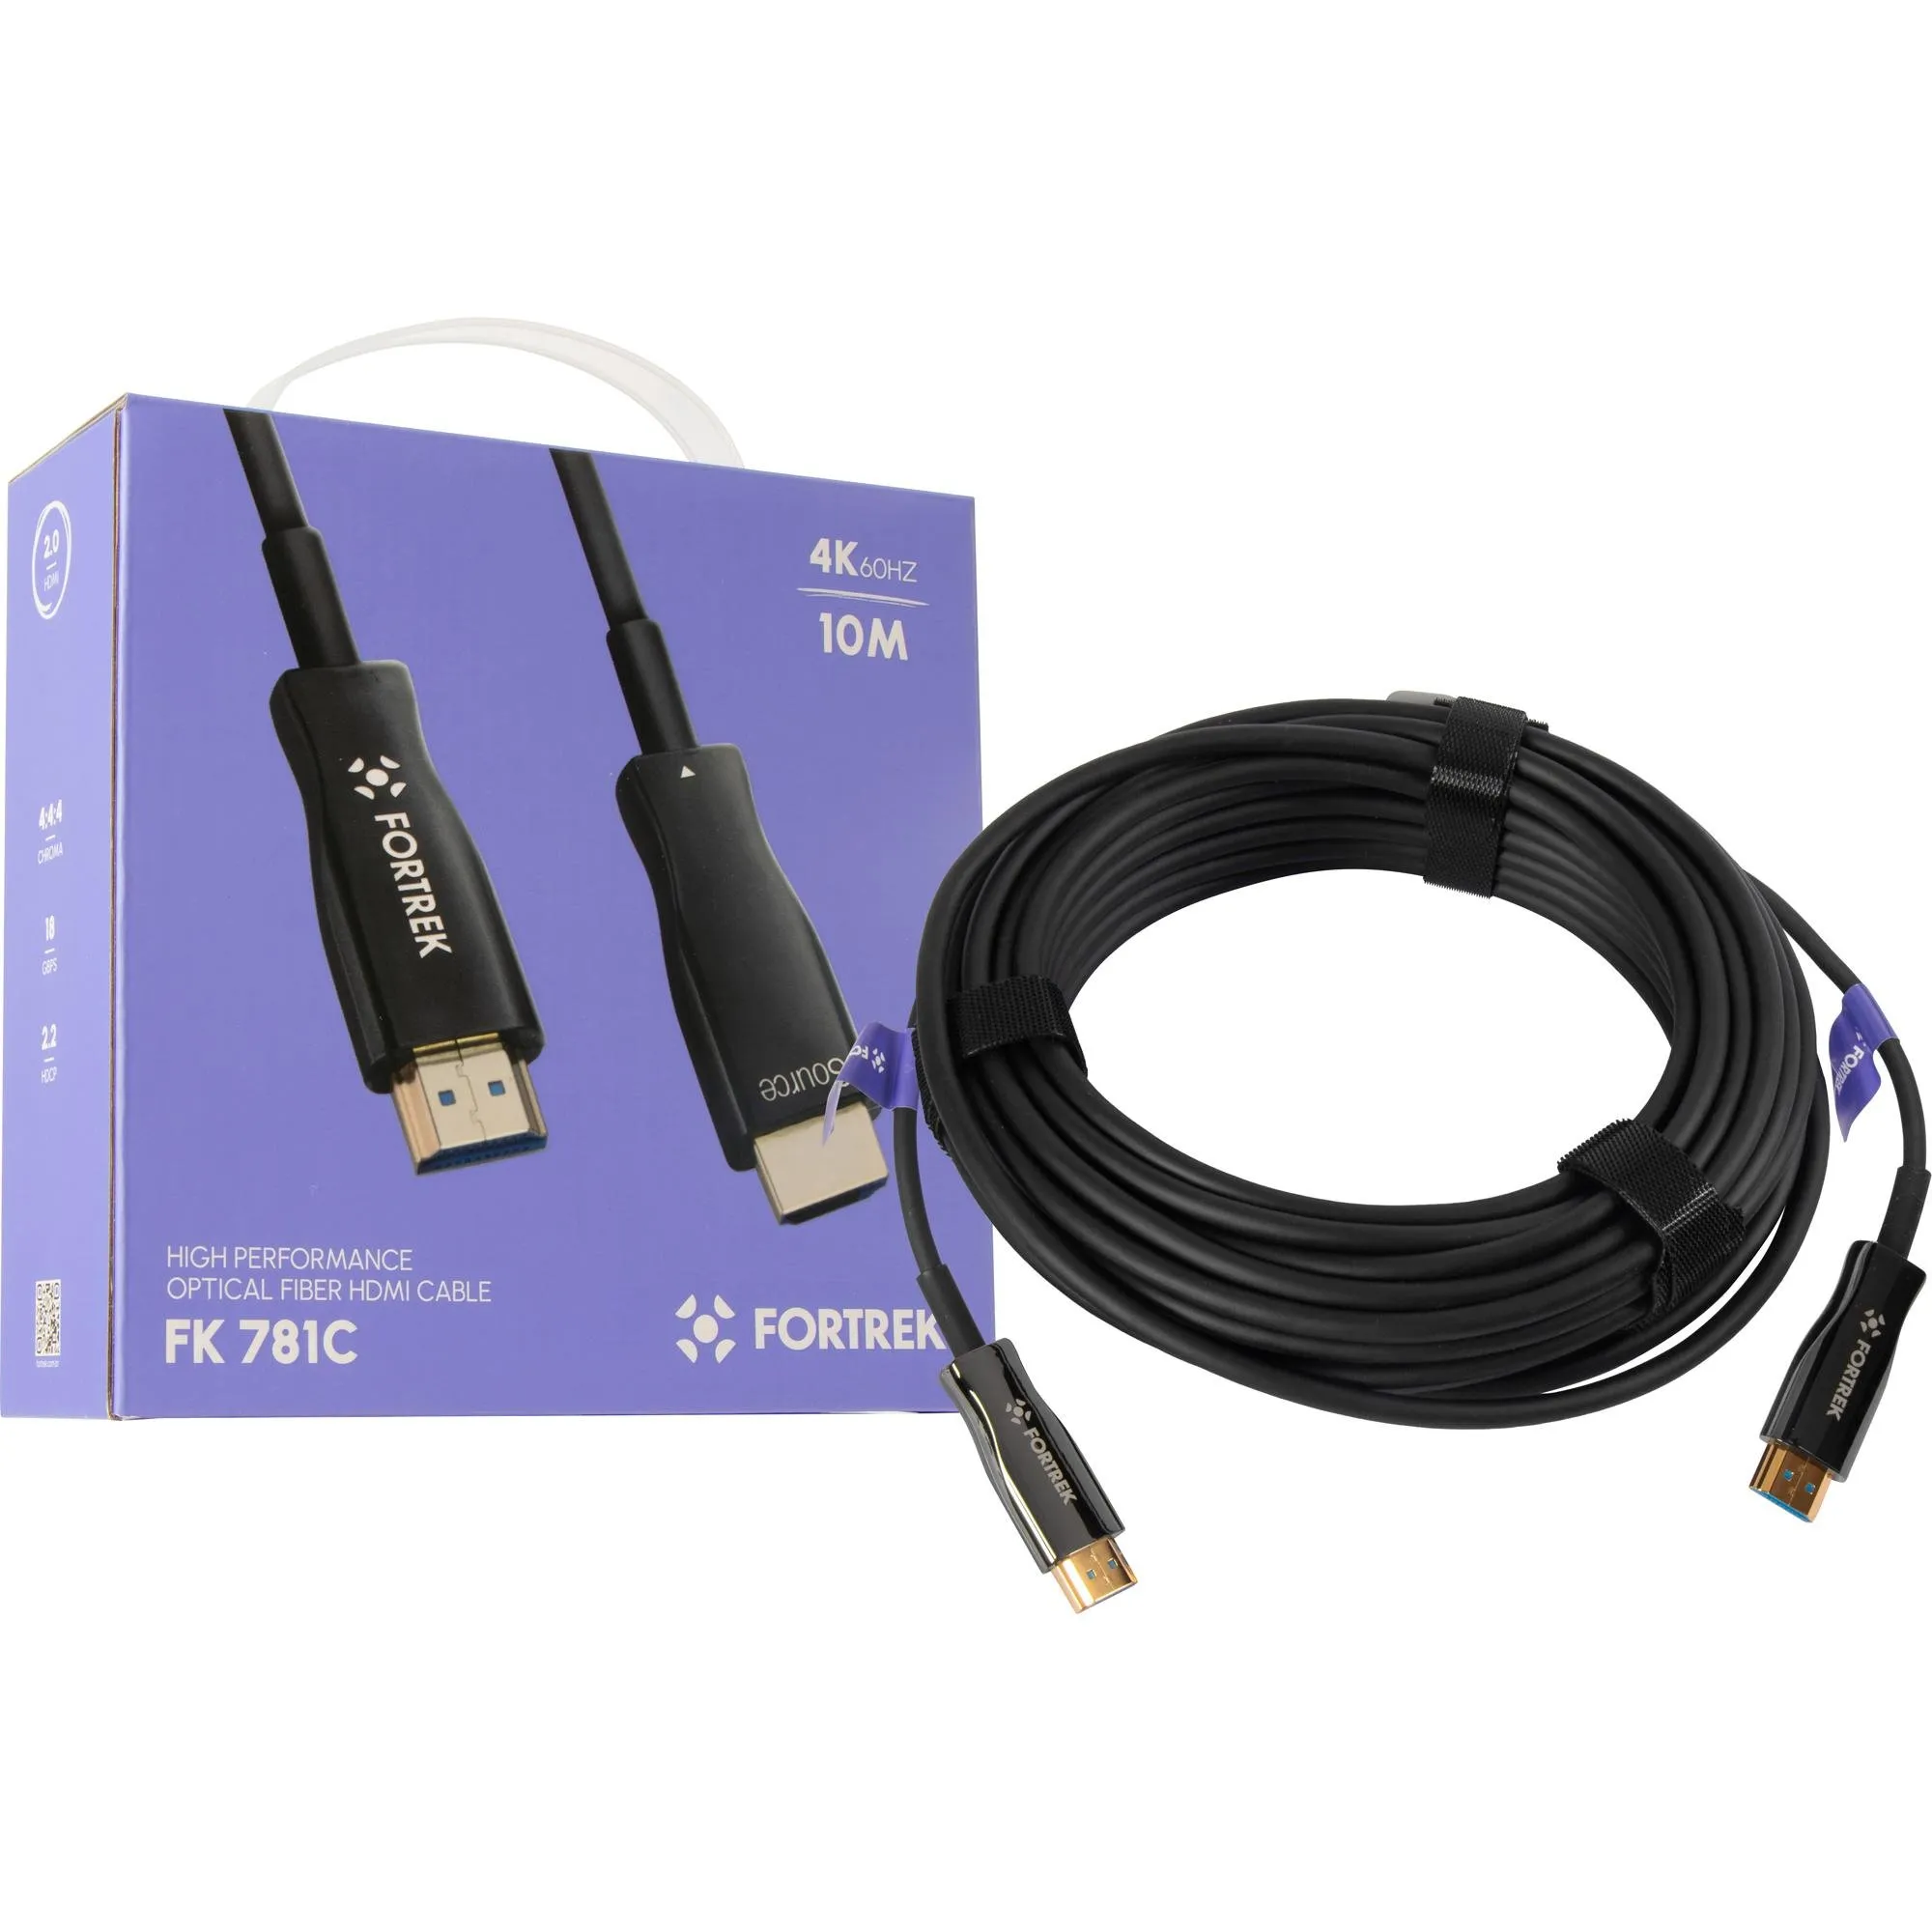 Cabo HDMI Fibra Óptica 4k FK781C 10m Fortrek por 263,00 à vista no boleto/pix ou parcele em até 10x sem juros. Compre na loja Mundomax!